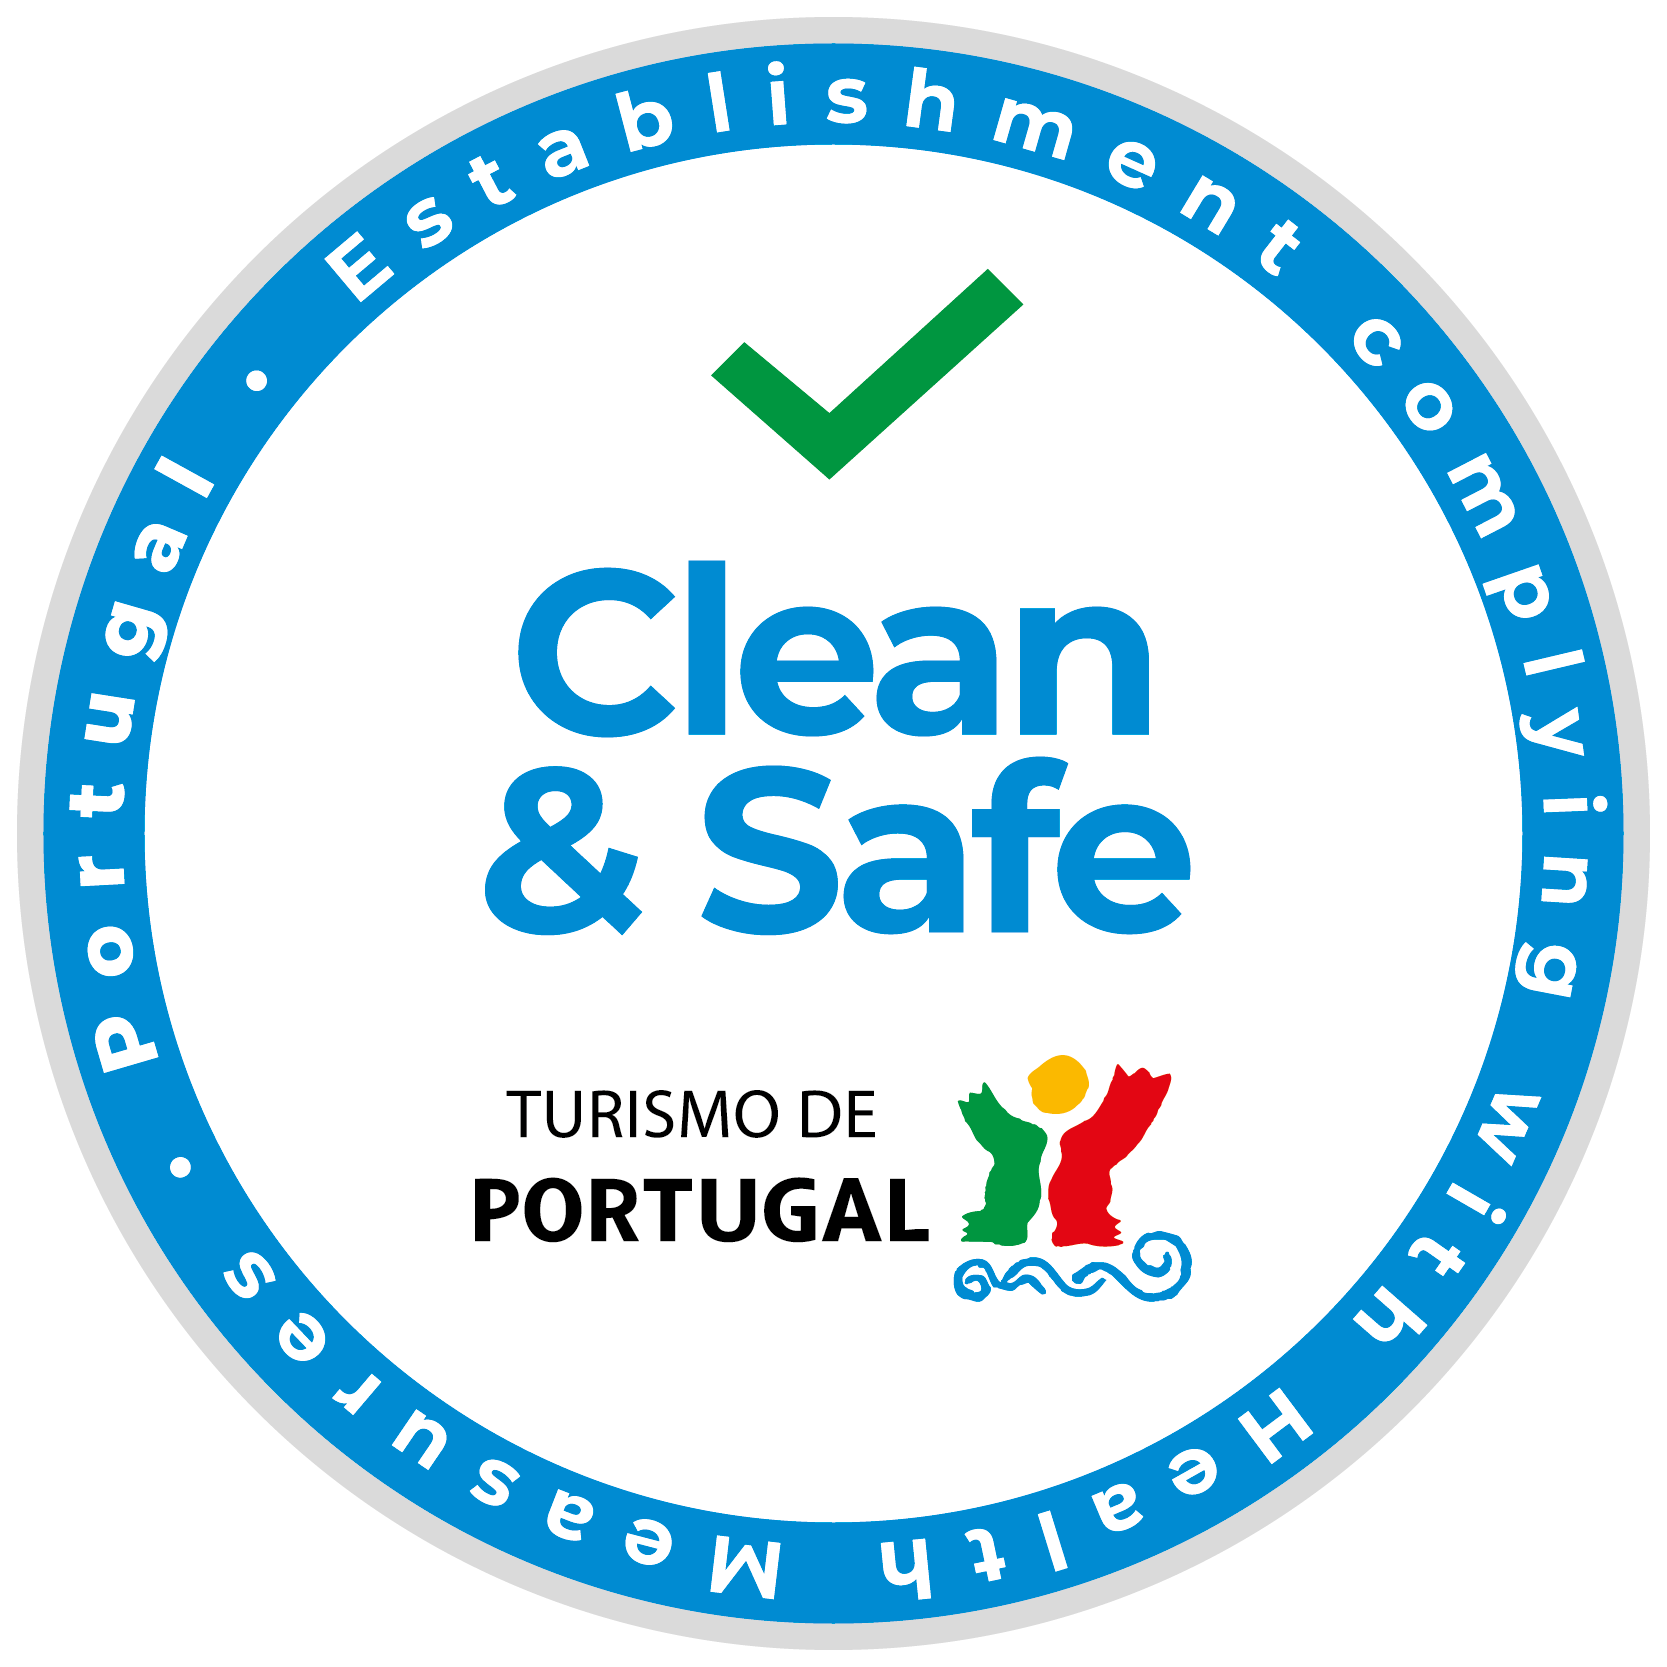 Selo clean and safe do Turismo de Portugal atribuido ao Alentejo Marmoris Hotel & Spa em Vila Viçosa